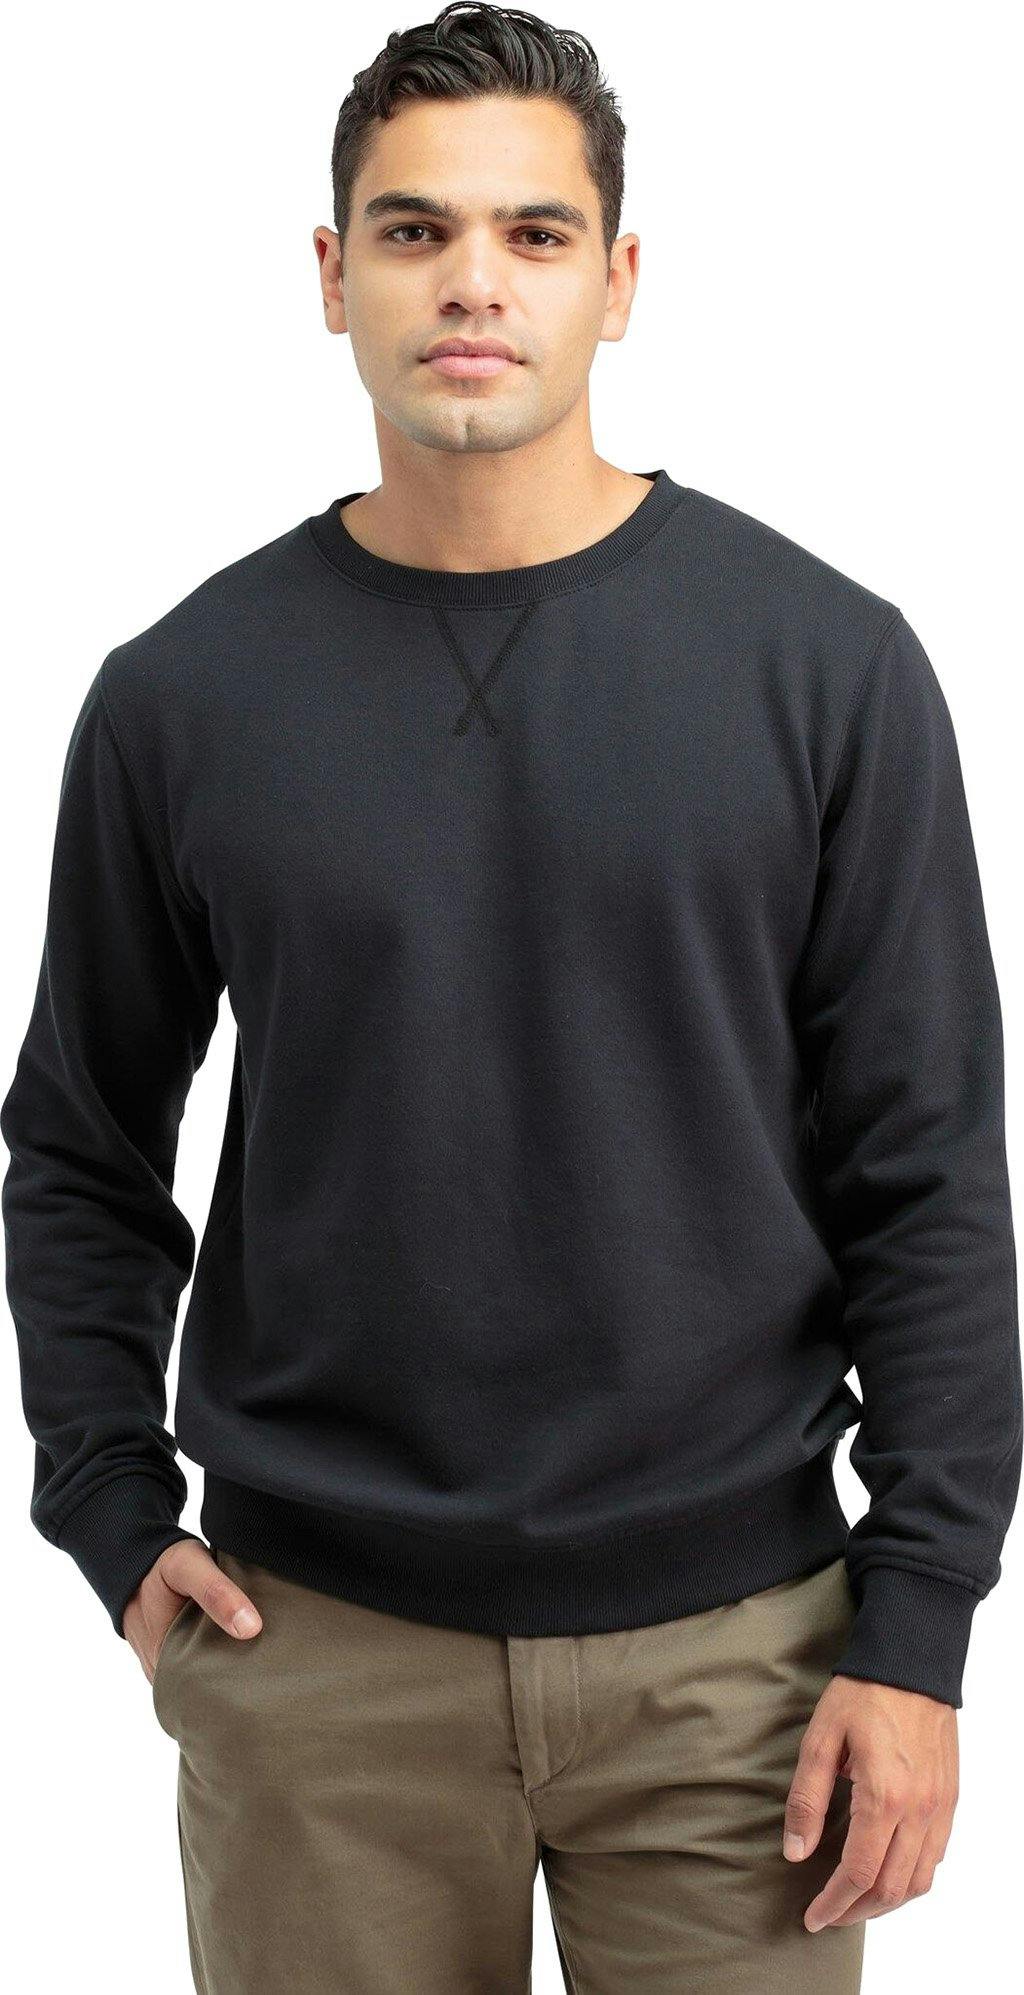 Product gallery image number 1 for product Fleece Sweatshirt - Men's